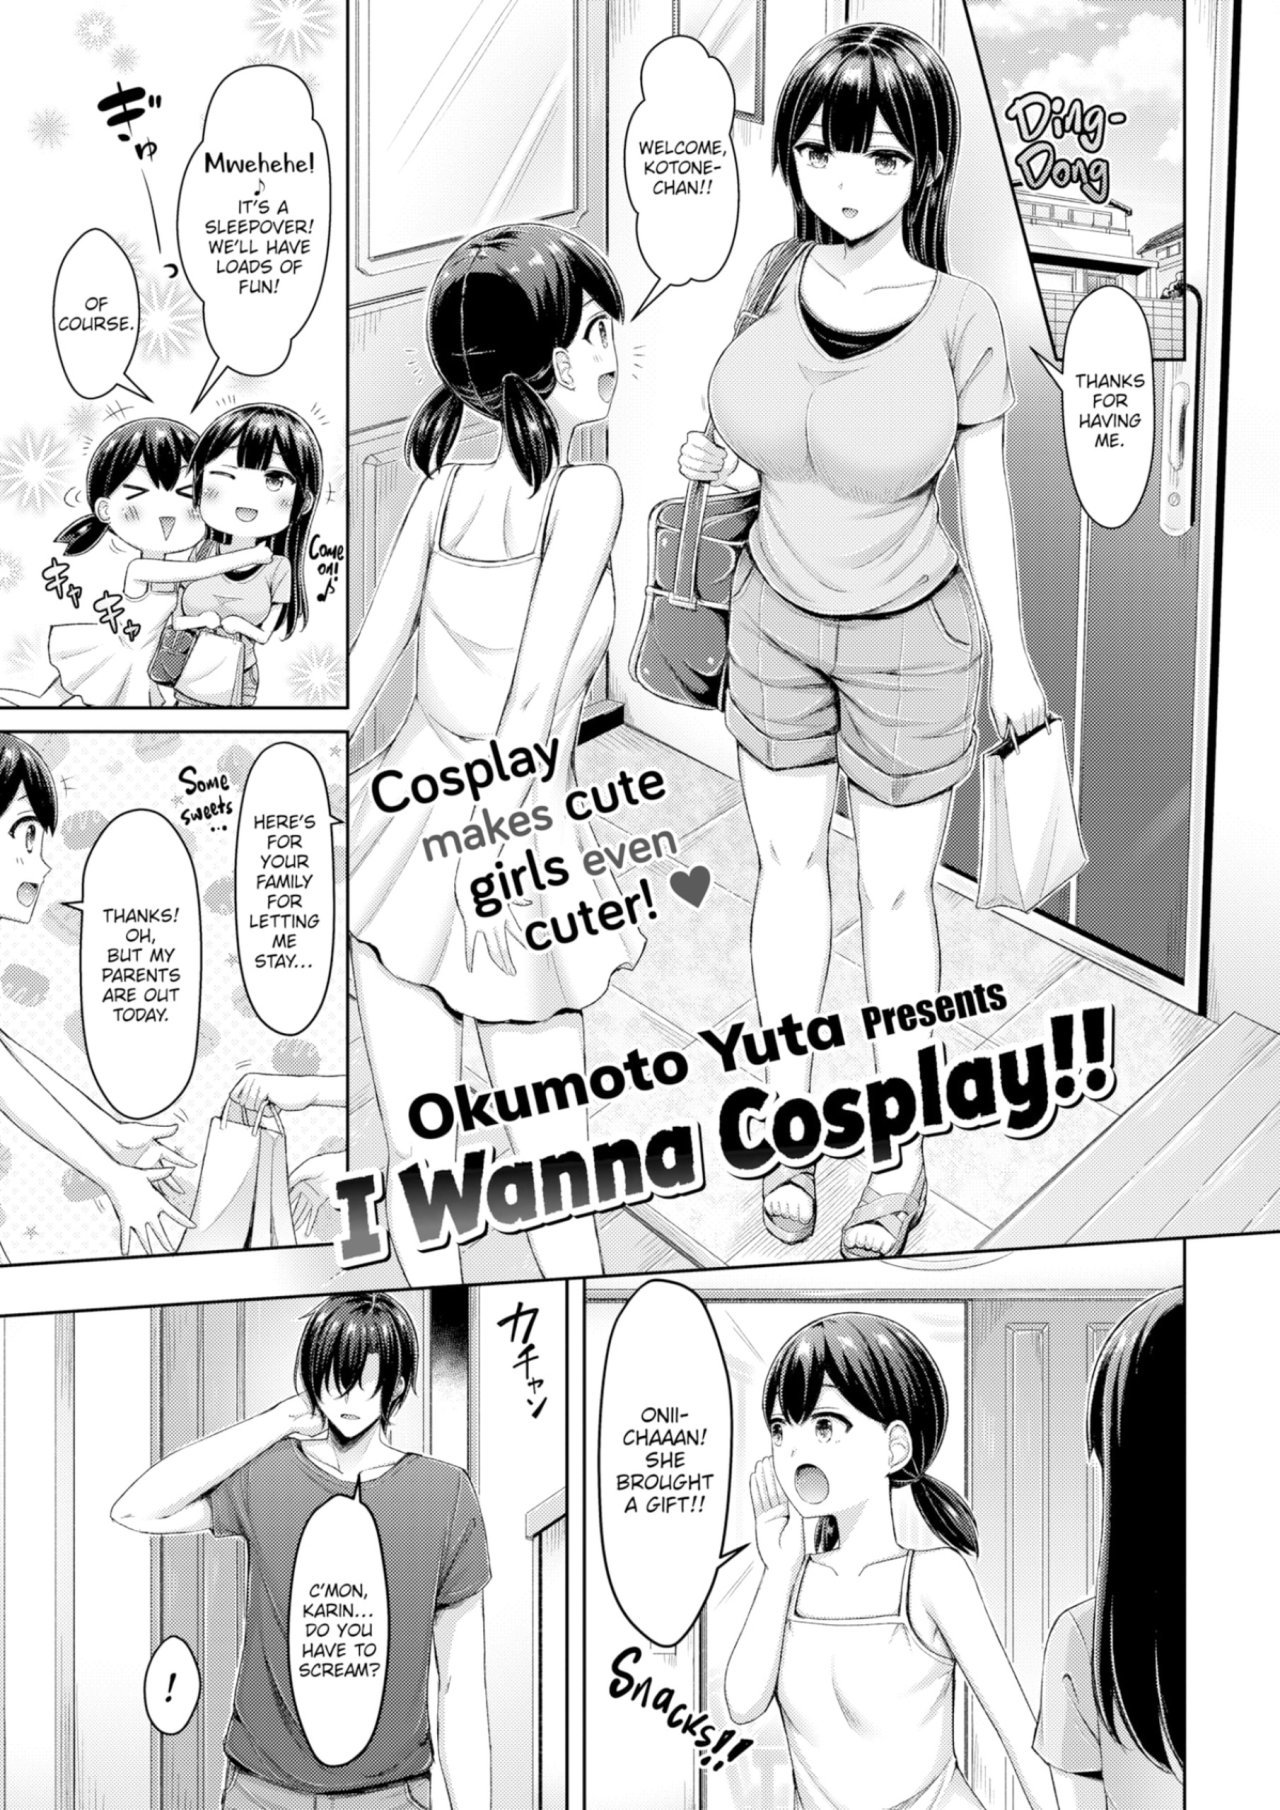 I wanna cosplay!! - 0